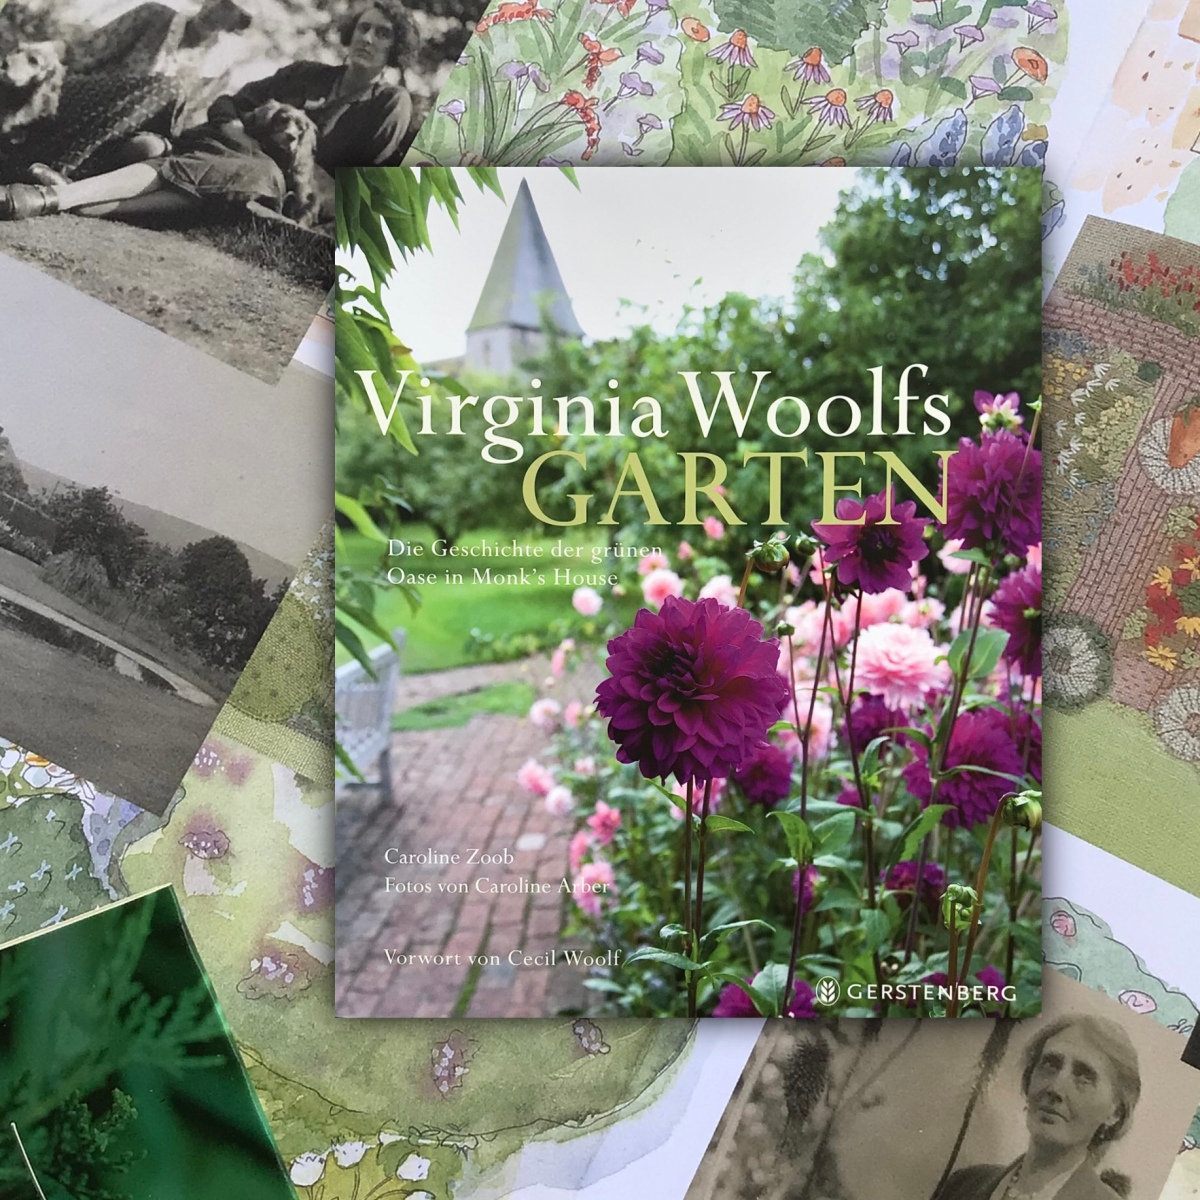 „Virginia Woolfs Garten“ von Caroline Zoob und Caroline Arber